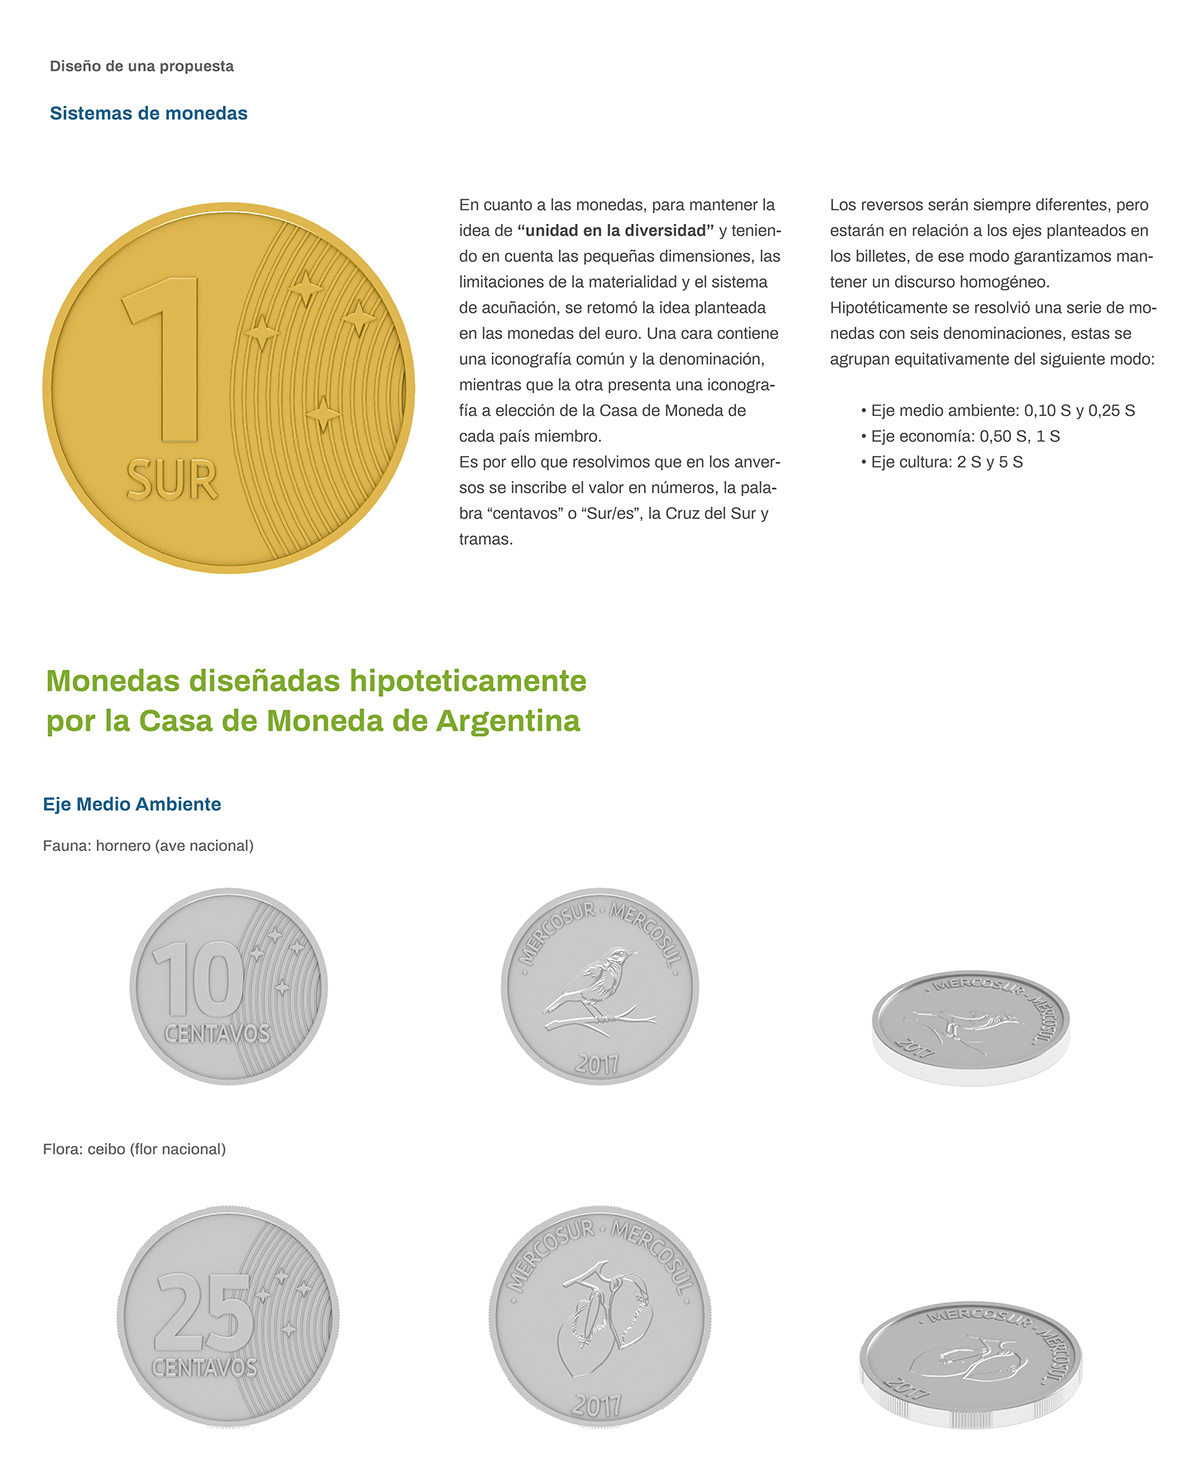 papel moneda Dinero mercosur   Banknote moneda identidad colectiva america del sur Comunicación visual